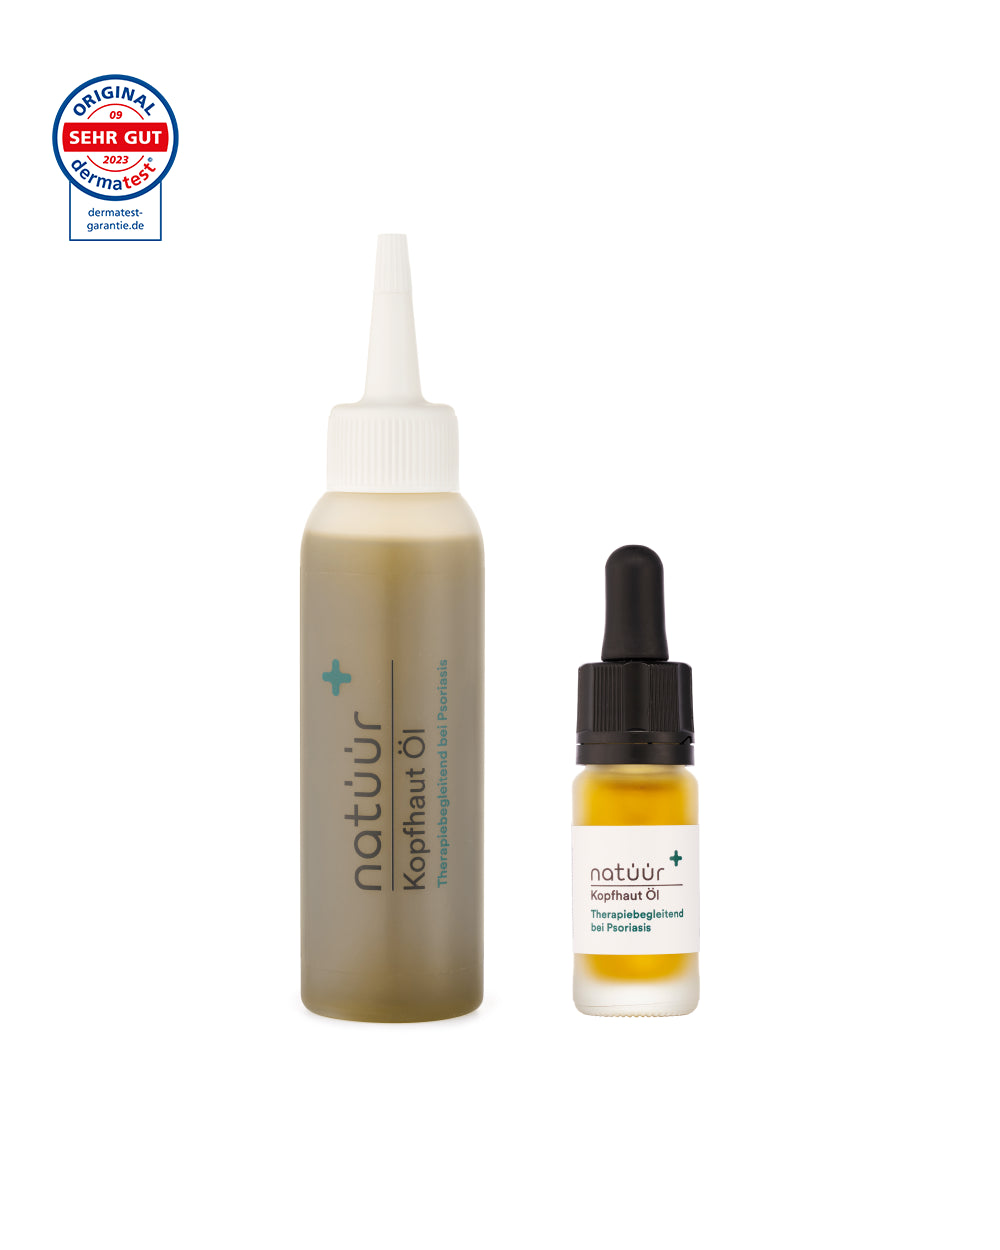 Das Duo-Set Kopfhaut-Öl der Marke natüür mit Psoriasis Körperpflege-Produkten - dem flüssigen Öl in einer Plasticplasche und einer Glasflasche.